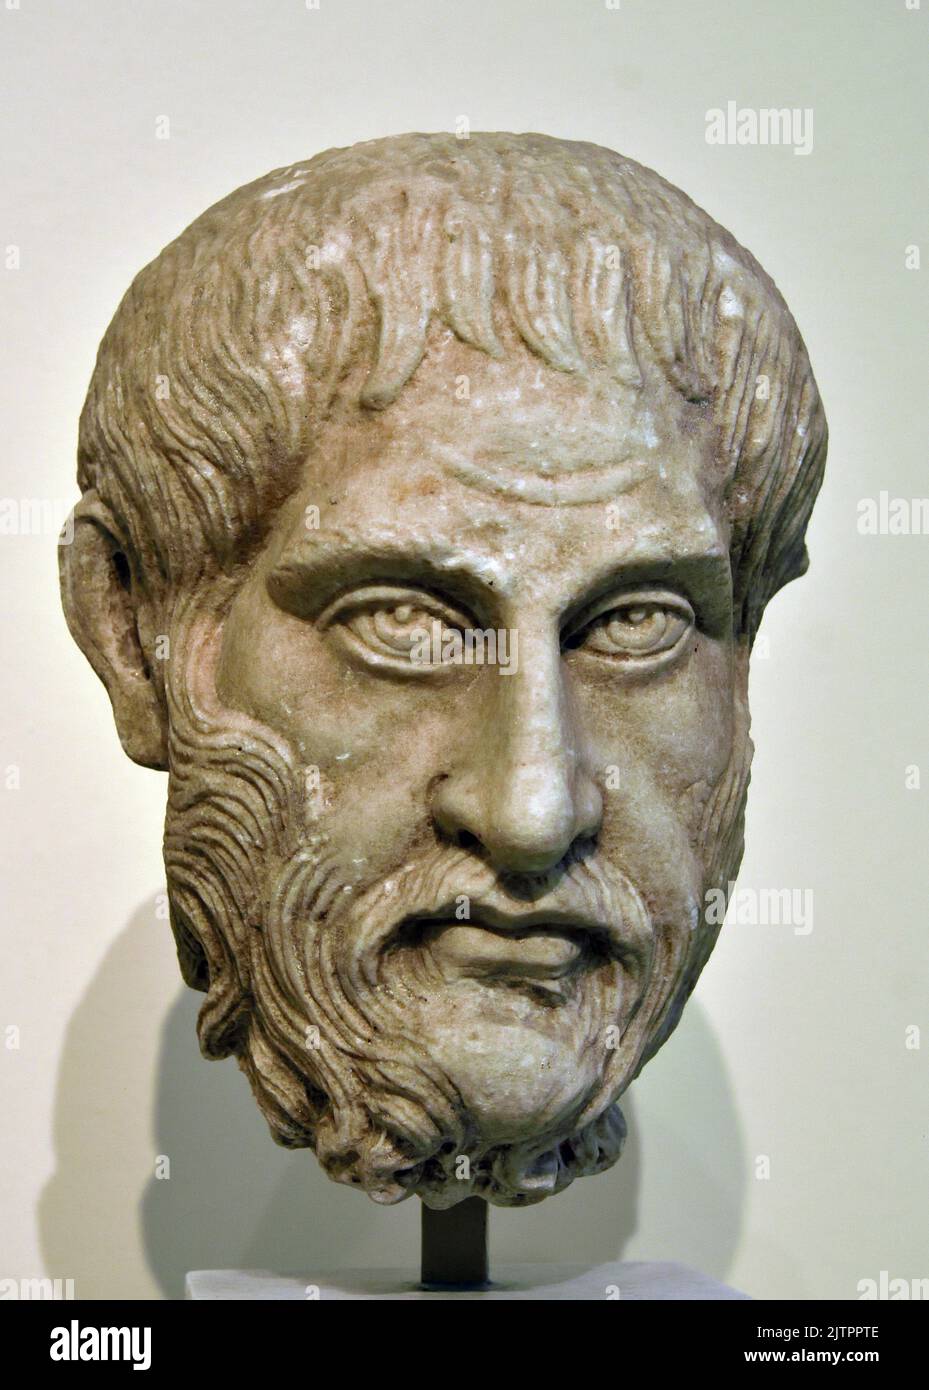 Philosophe, trouvé dans le sanctuaire d'Asklepios, Épidauros, philosophe, buste 270-208 AD, Musée archéologique national d'Athènes. Marbre pentélique Banque D'Images